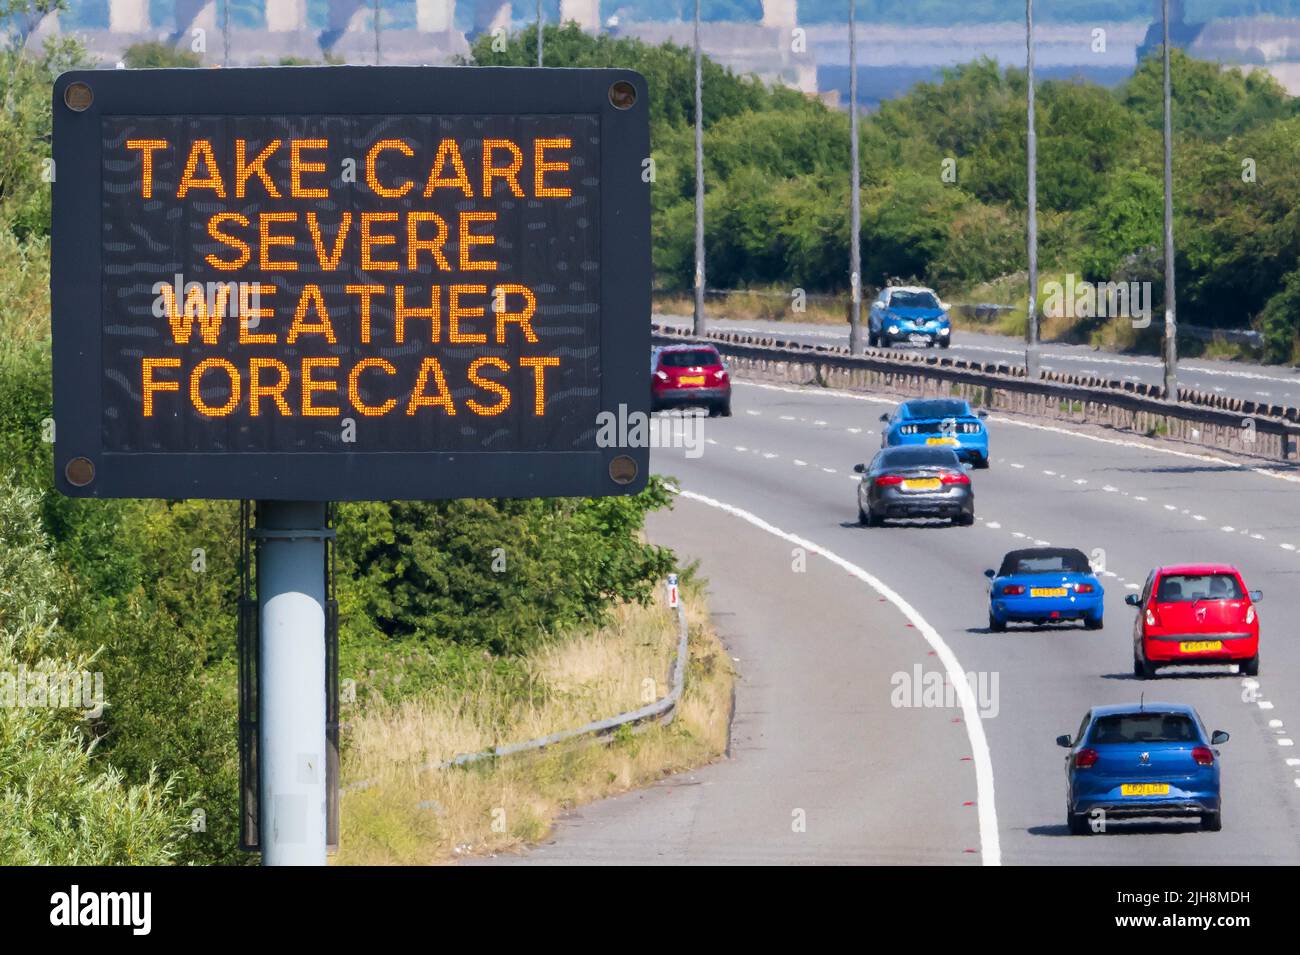 ROGIET, GALES - 16 DE JULIO: Un cartel en la M4 cerca del puente Príncipe de Gales advierte a los automovilistas de tomar cuidado debido a la fuerte previsión del tiempo el 16 de julio, Foto de stock